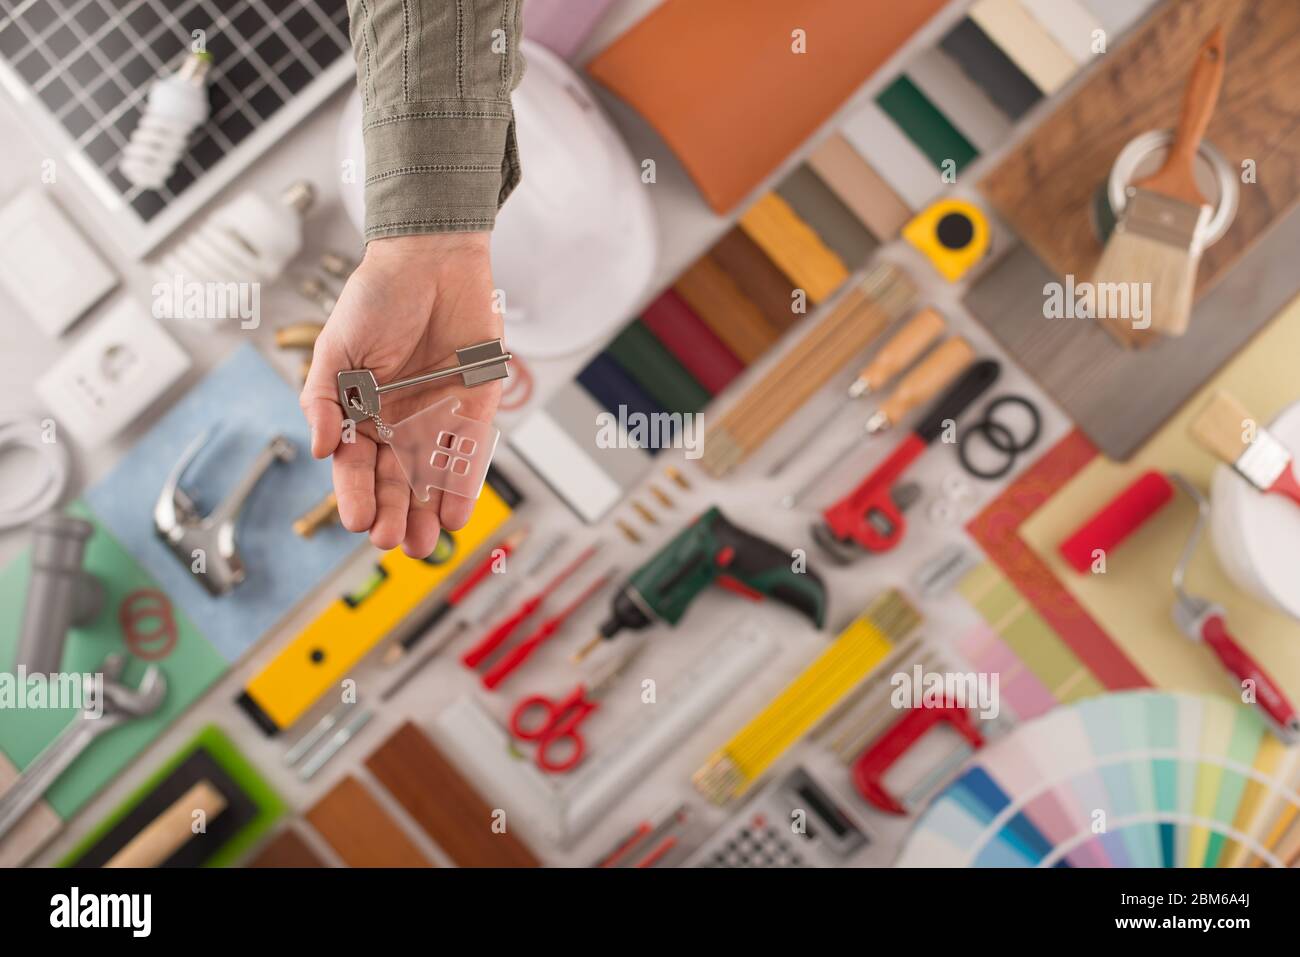 Hombre mano entrega de llaves de su casa, construir y renovar las herramientas de fondo, vista superior Foto de stock